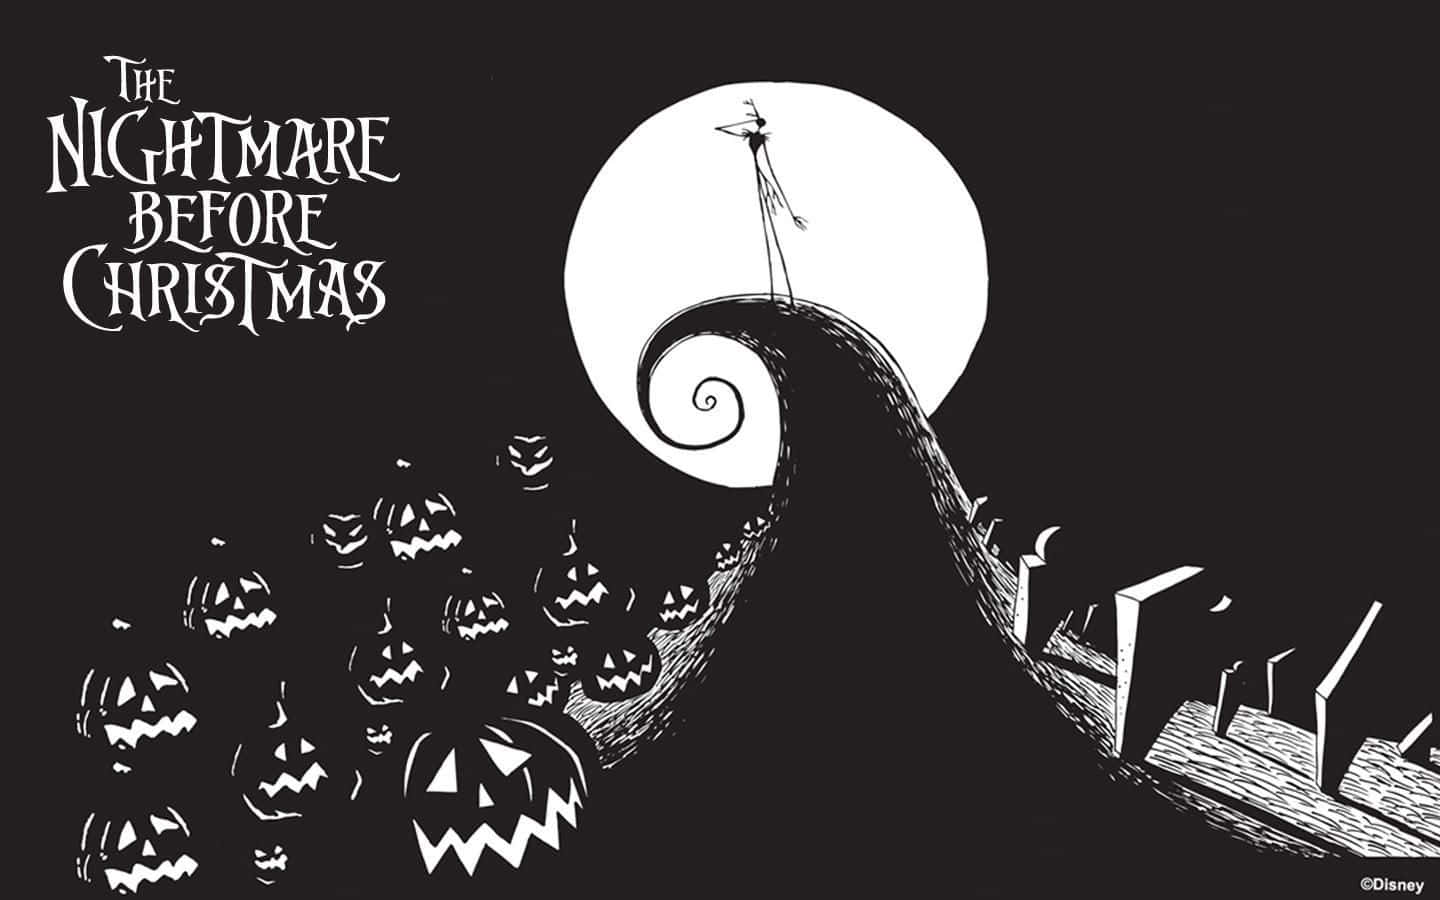 Låsop For Halloween Towns Verden Med Disneys Ikoniske Film, The Nightmare Before Christmas.